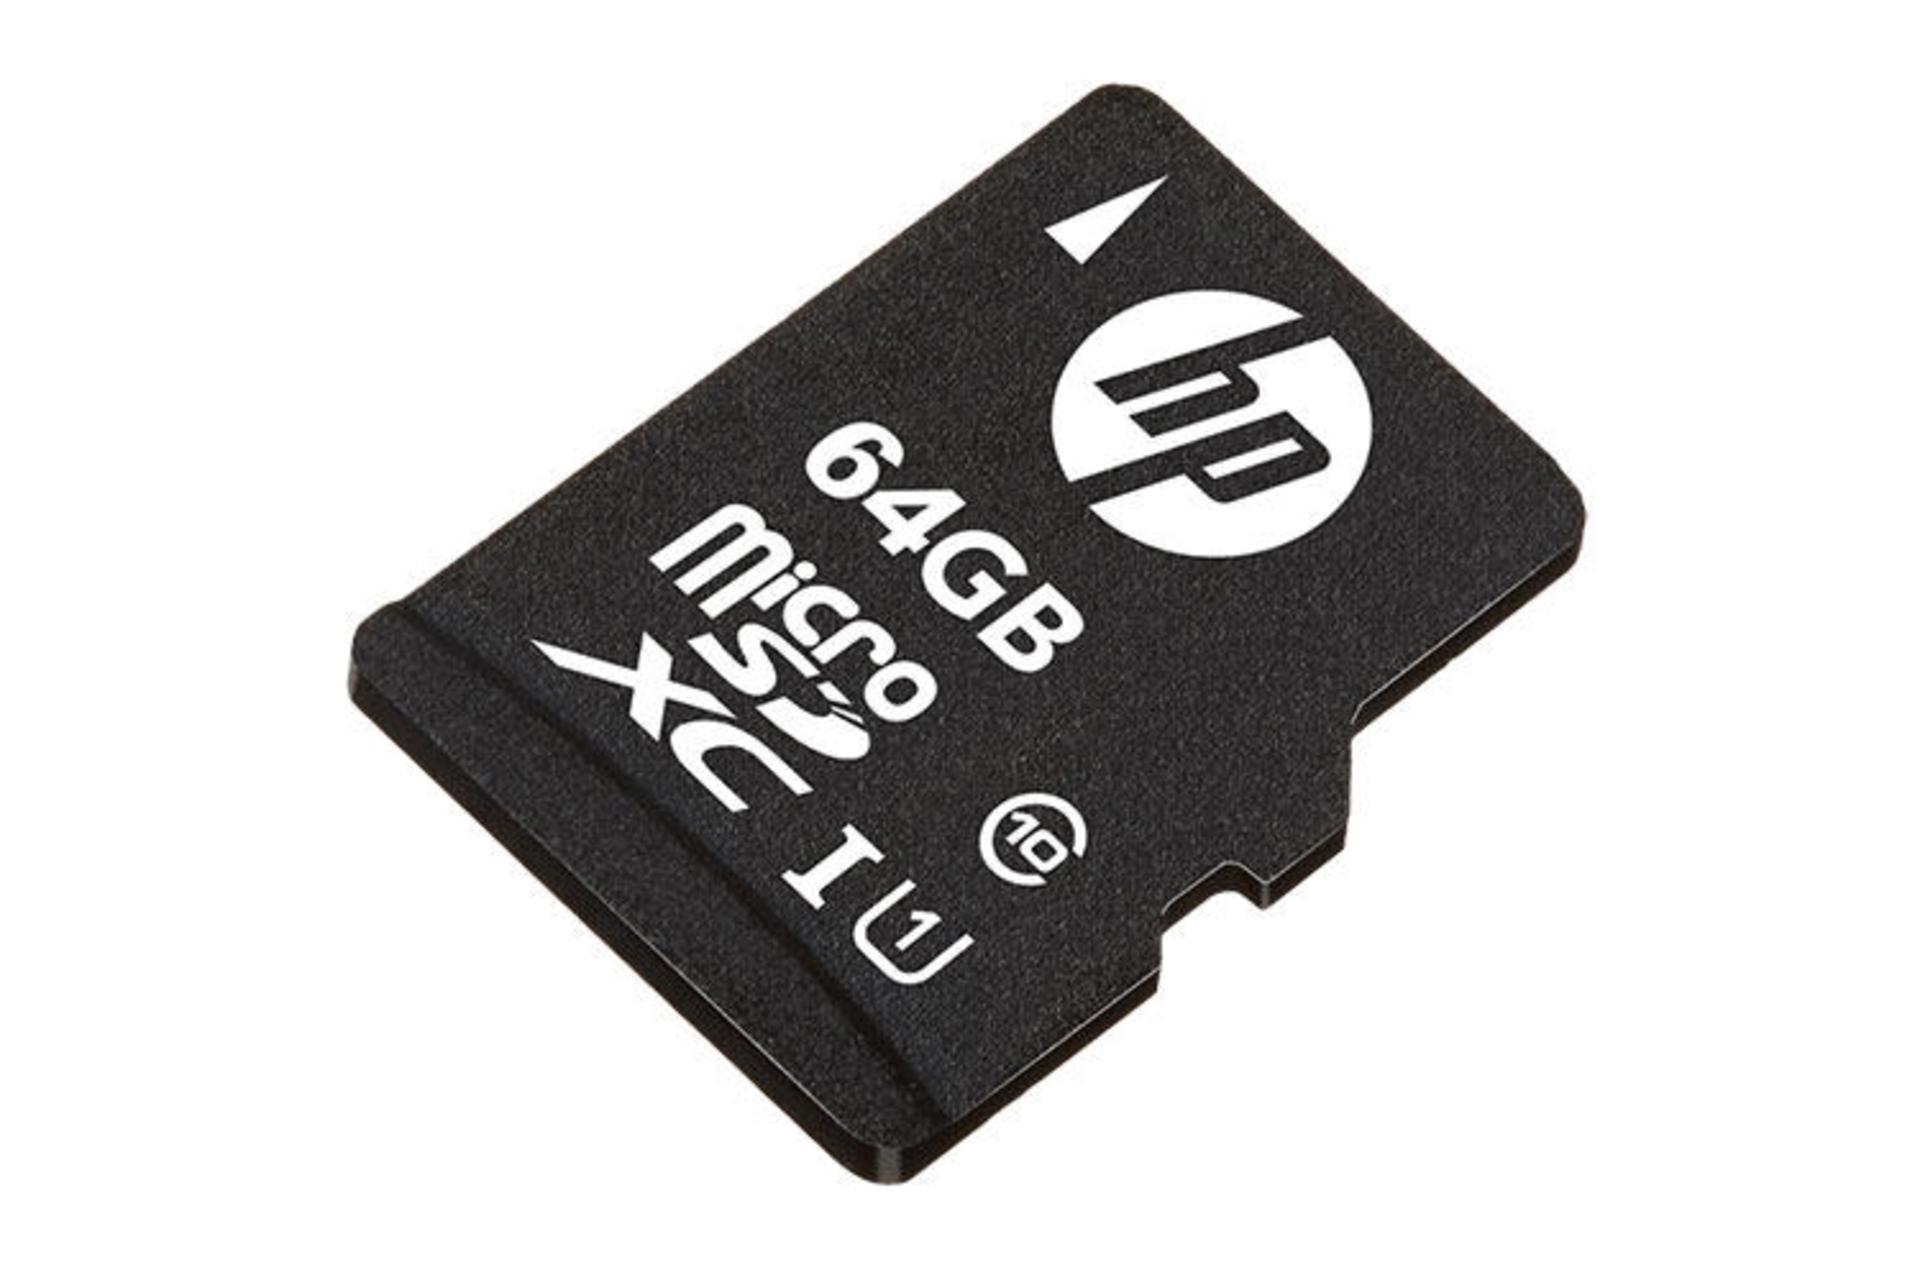 نمای جانبی  کارت حافظه اچ پی microSDXC با ظرفیت 64 گیگابایت مدل Mi210